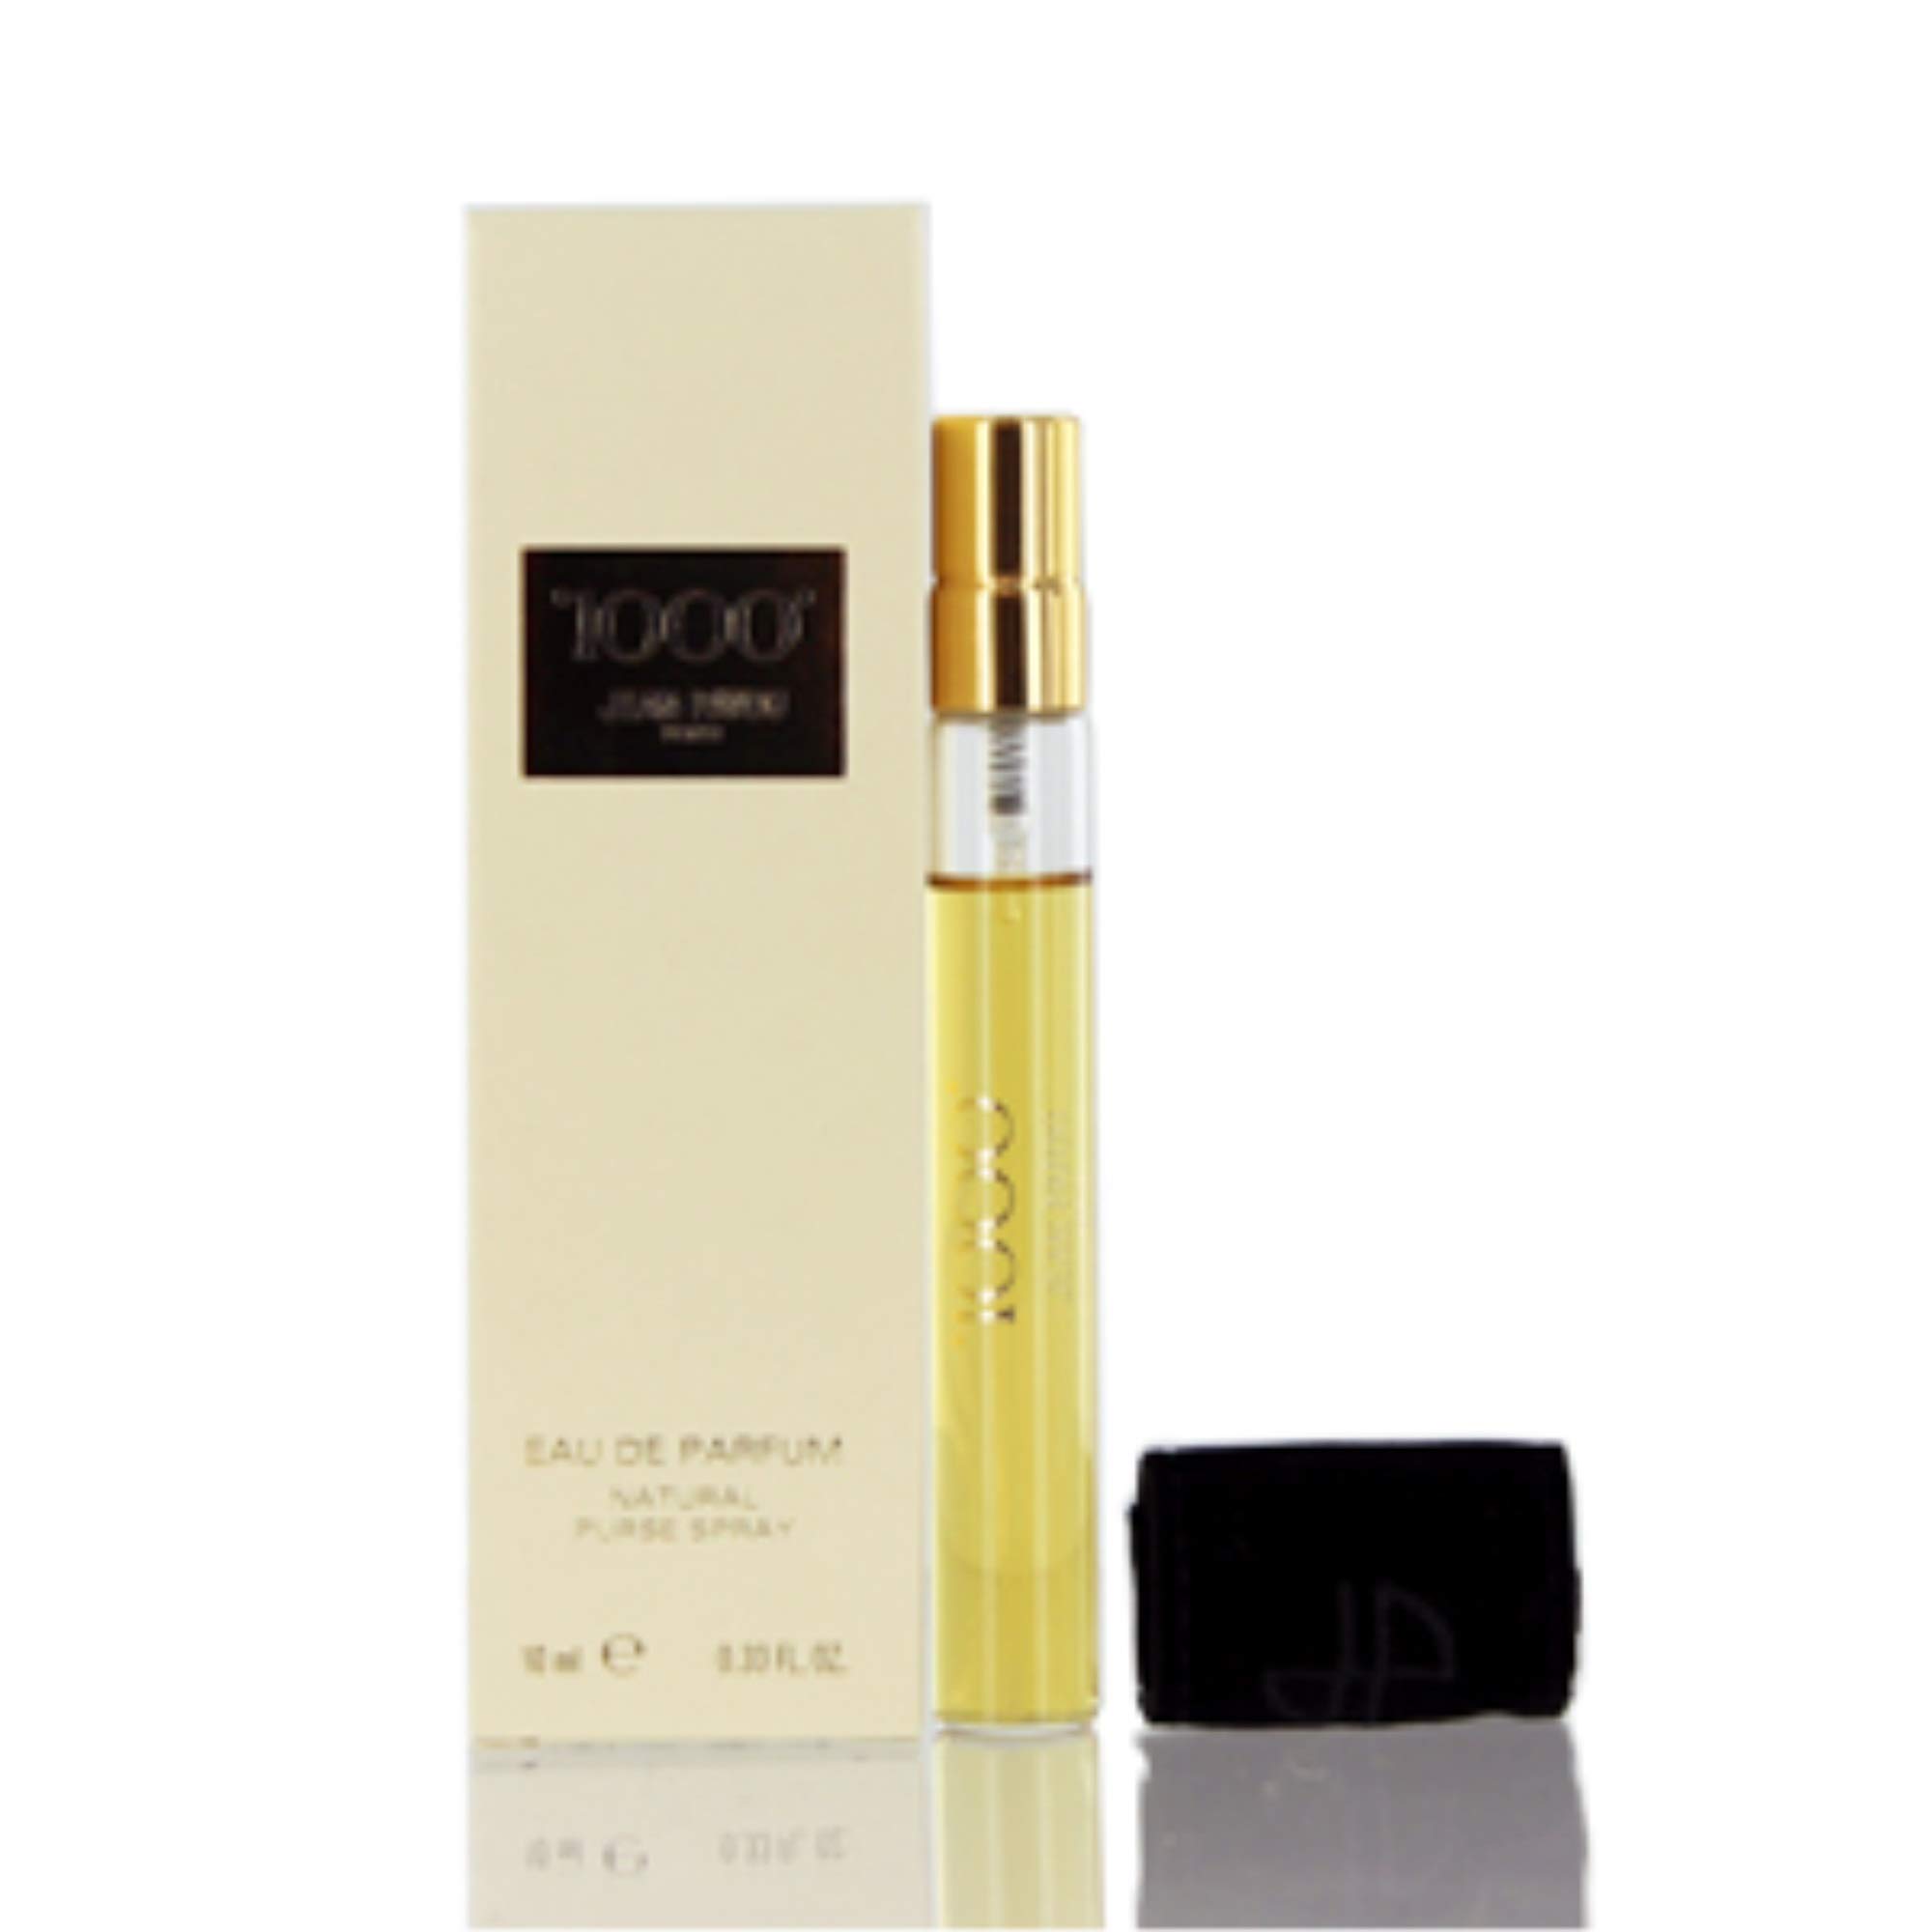 Jean Patou 1000 for Women Eau De Perfume Spray, 0.33 Ounce by Jean Patou